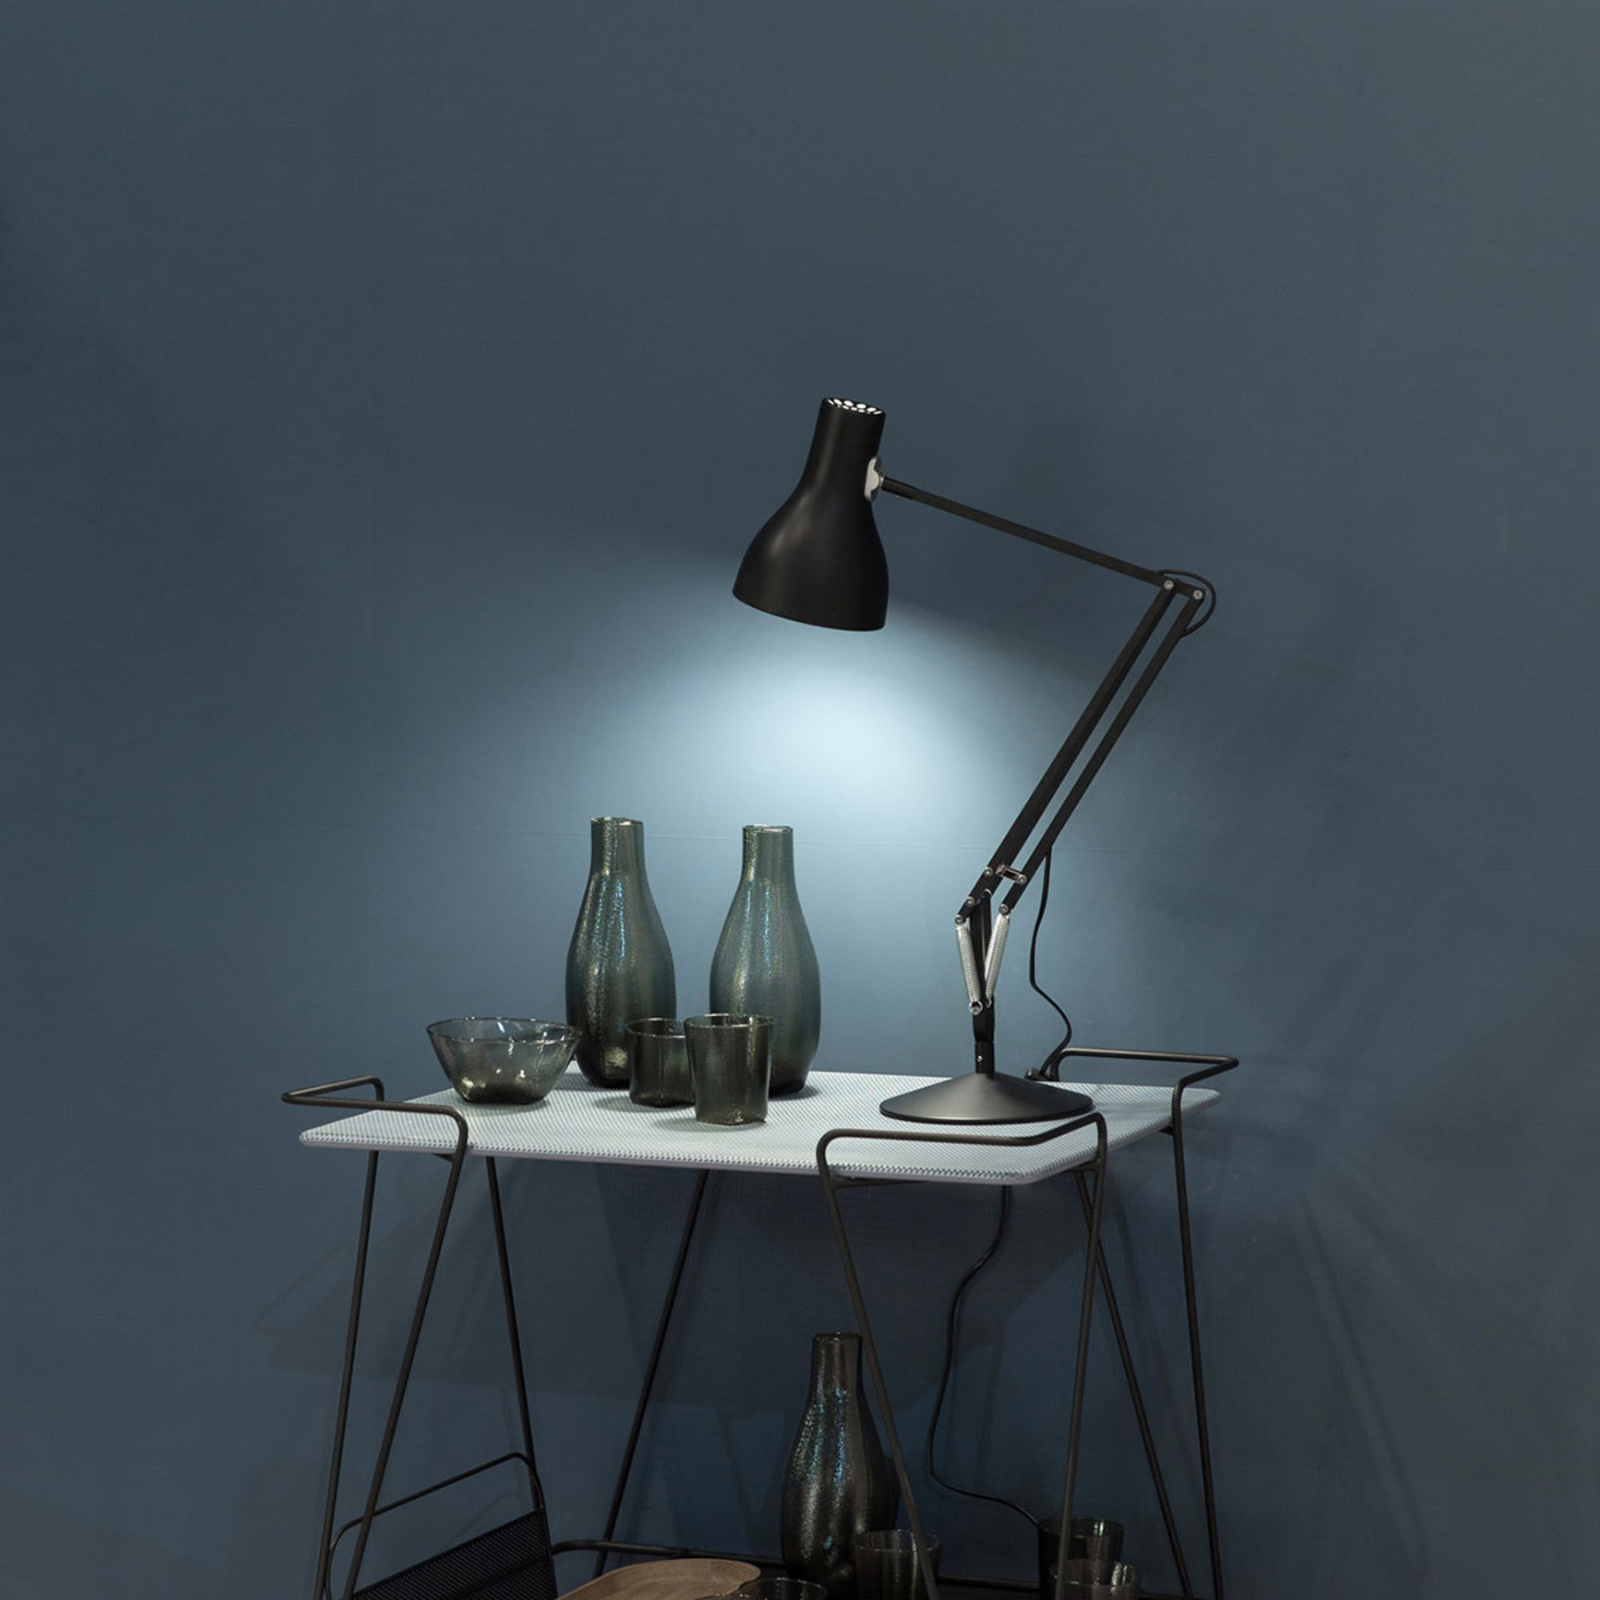 Anglepoise Type 75 stolní lampa sametová černá